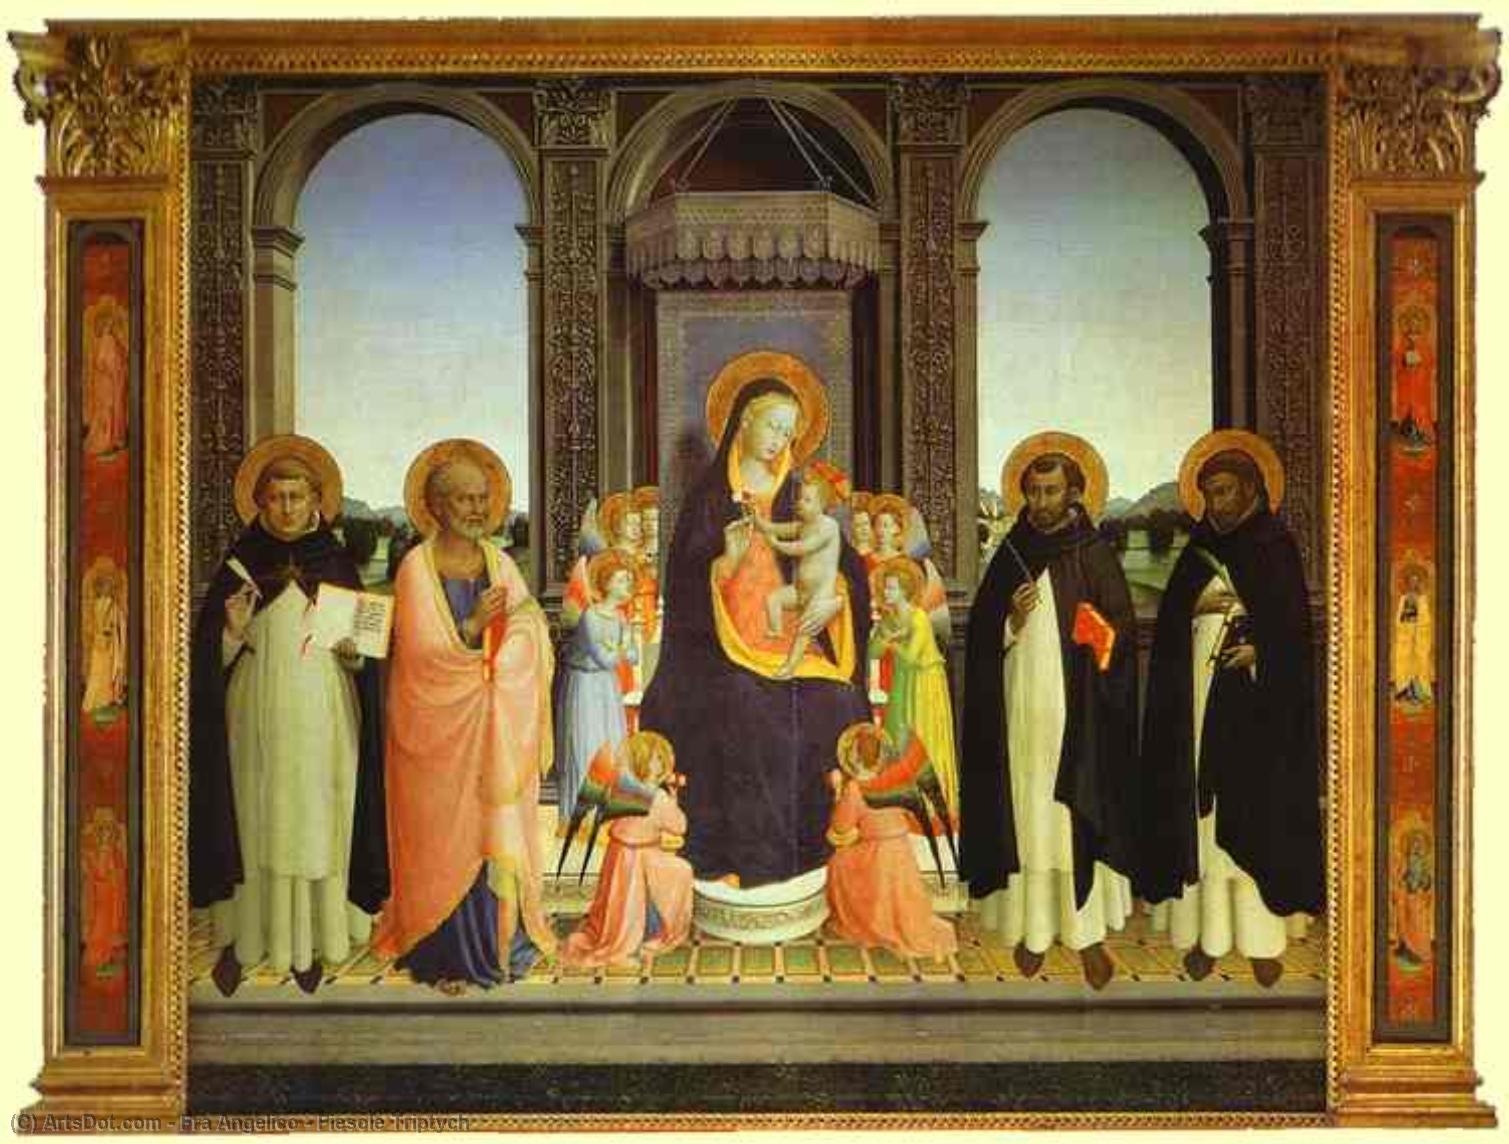 WikiOO.org - Encyclopedia of Fine Arts - Målning, konstverk Fra Angelico - Fiesole Triptych